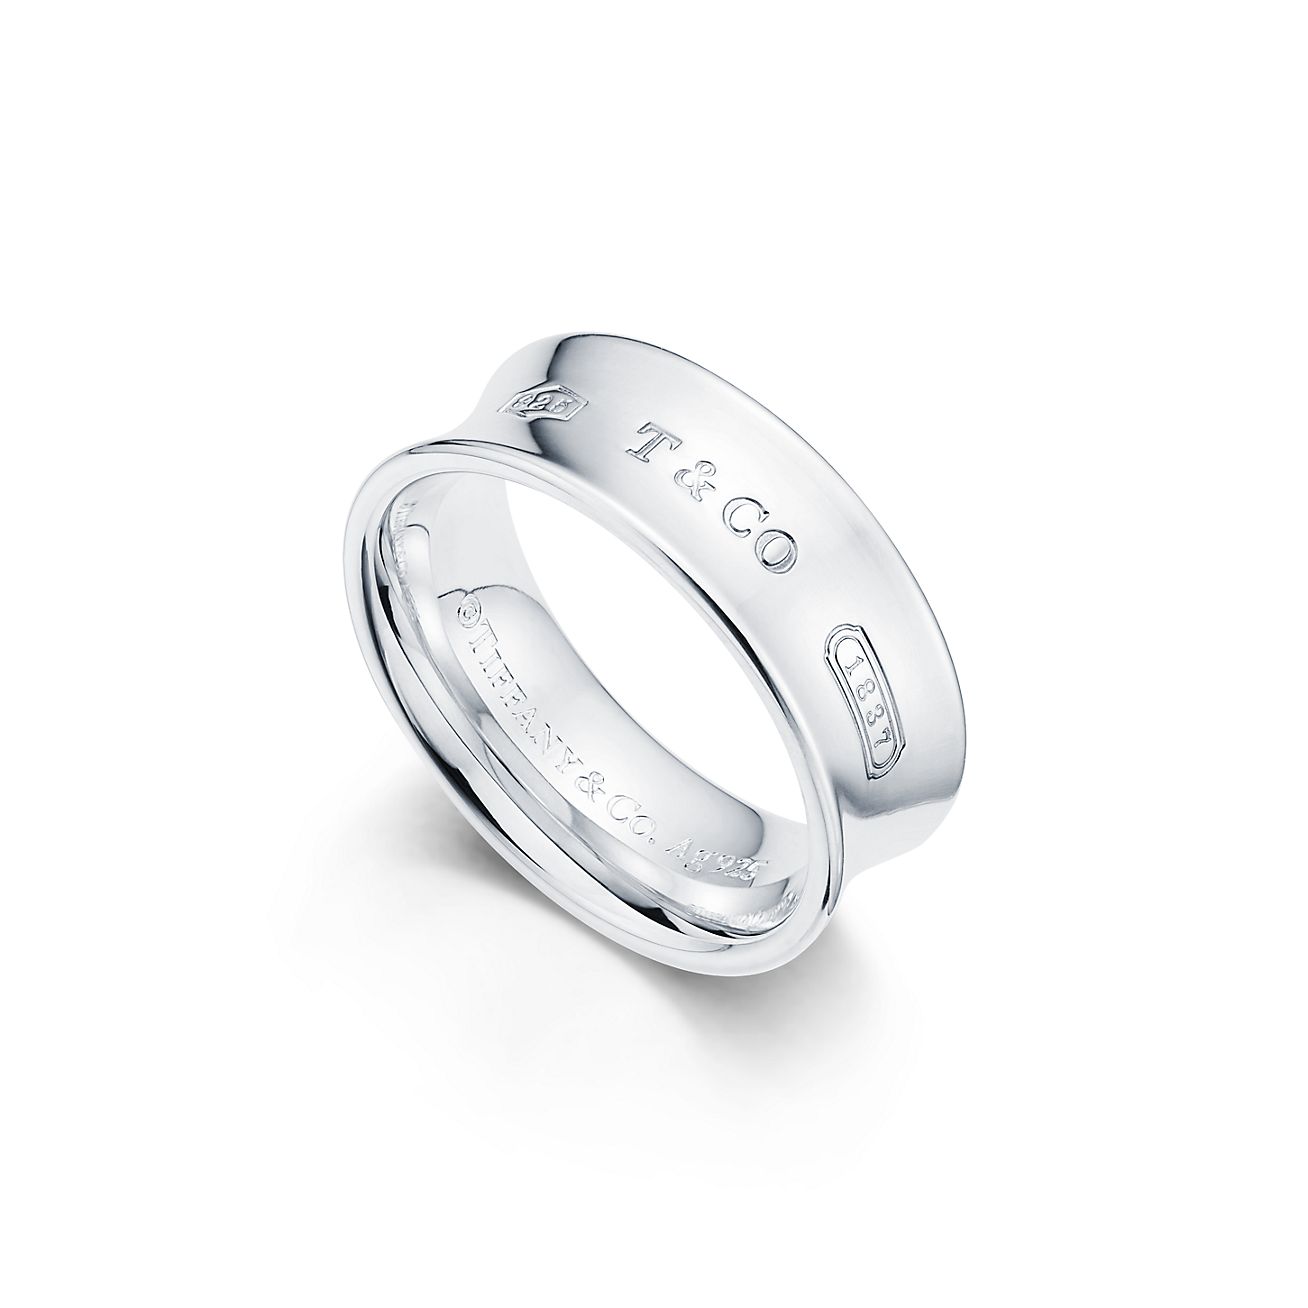 Tiffany 1837™ Ring